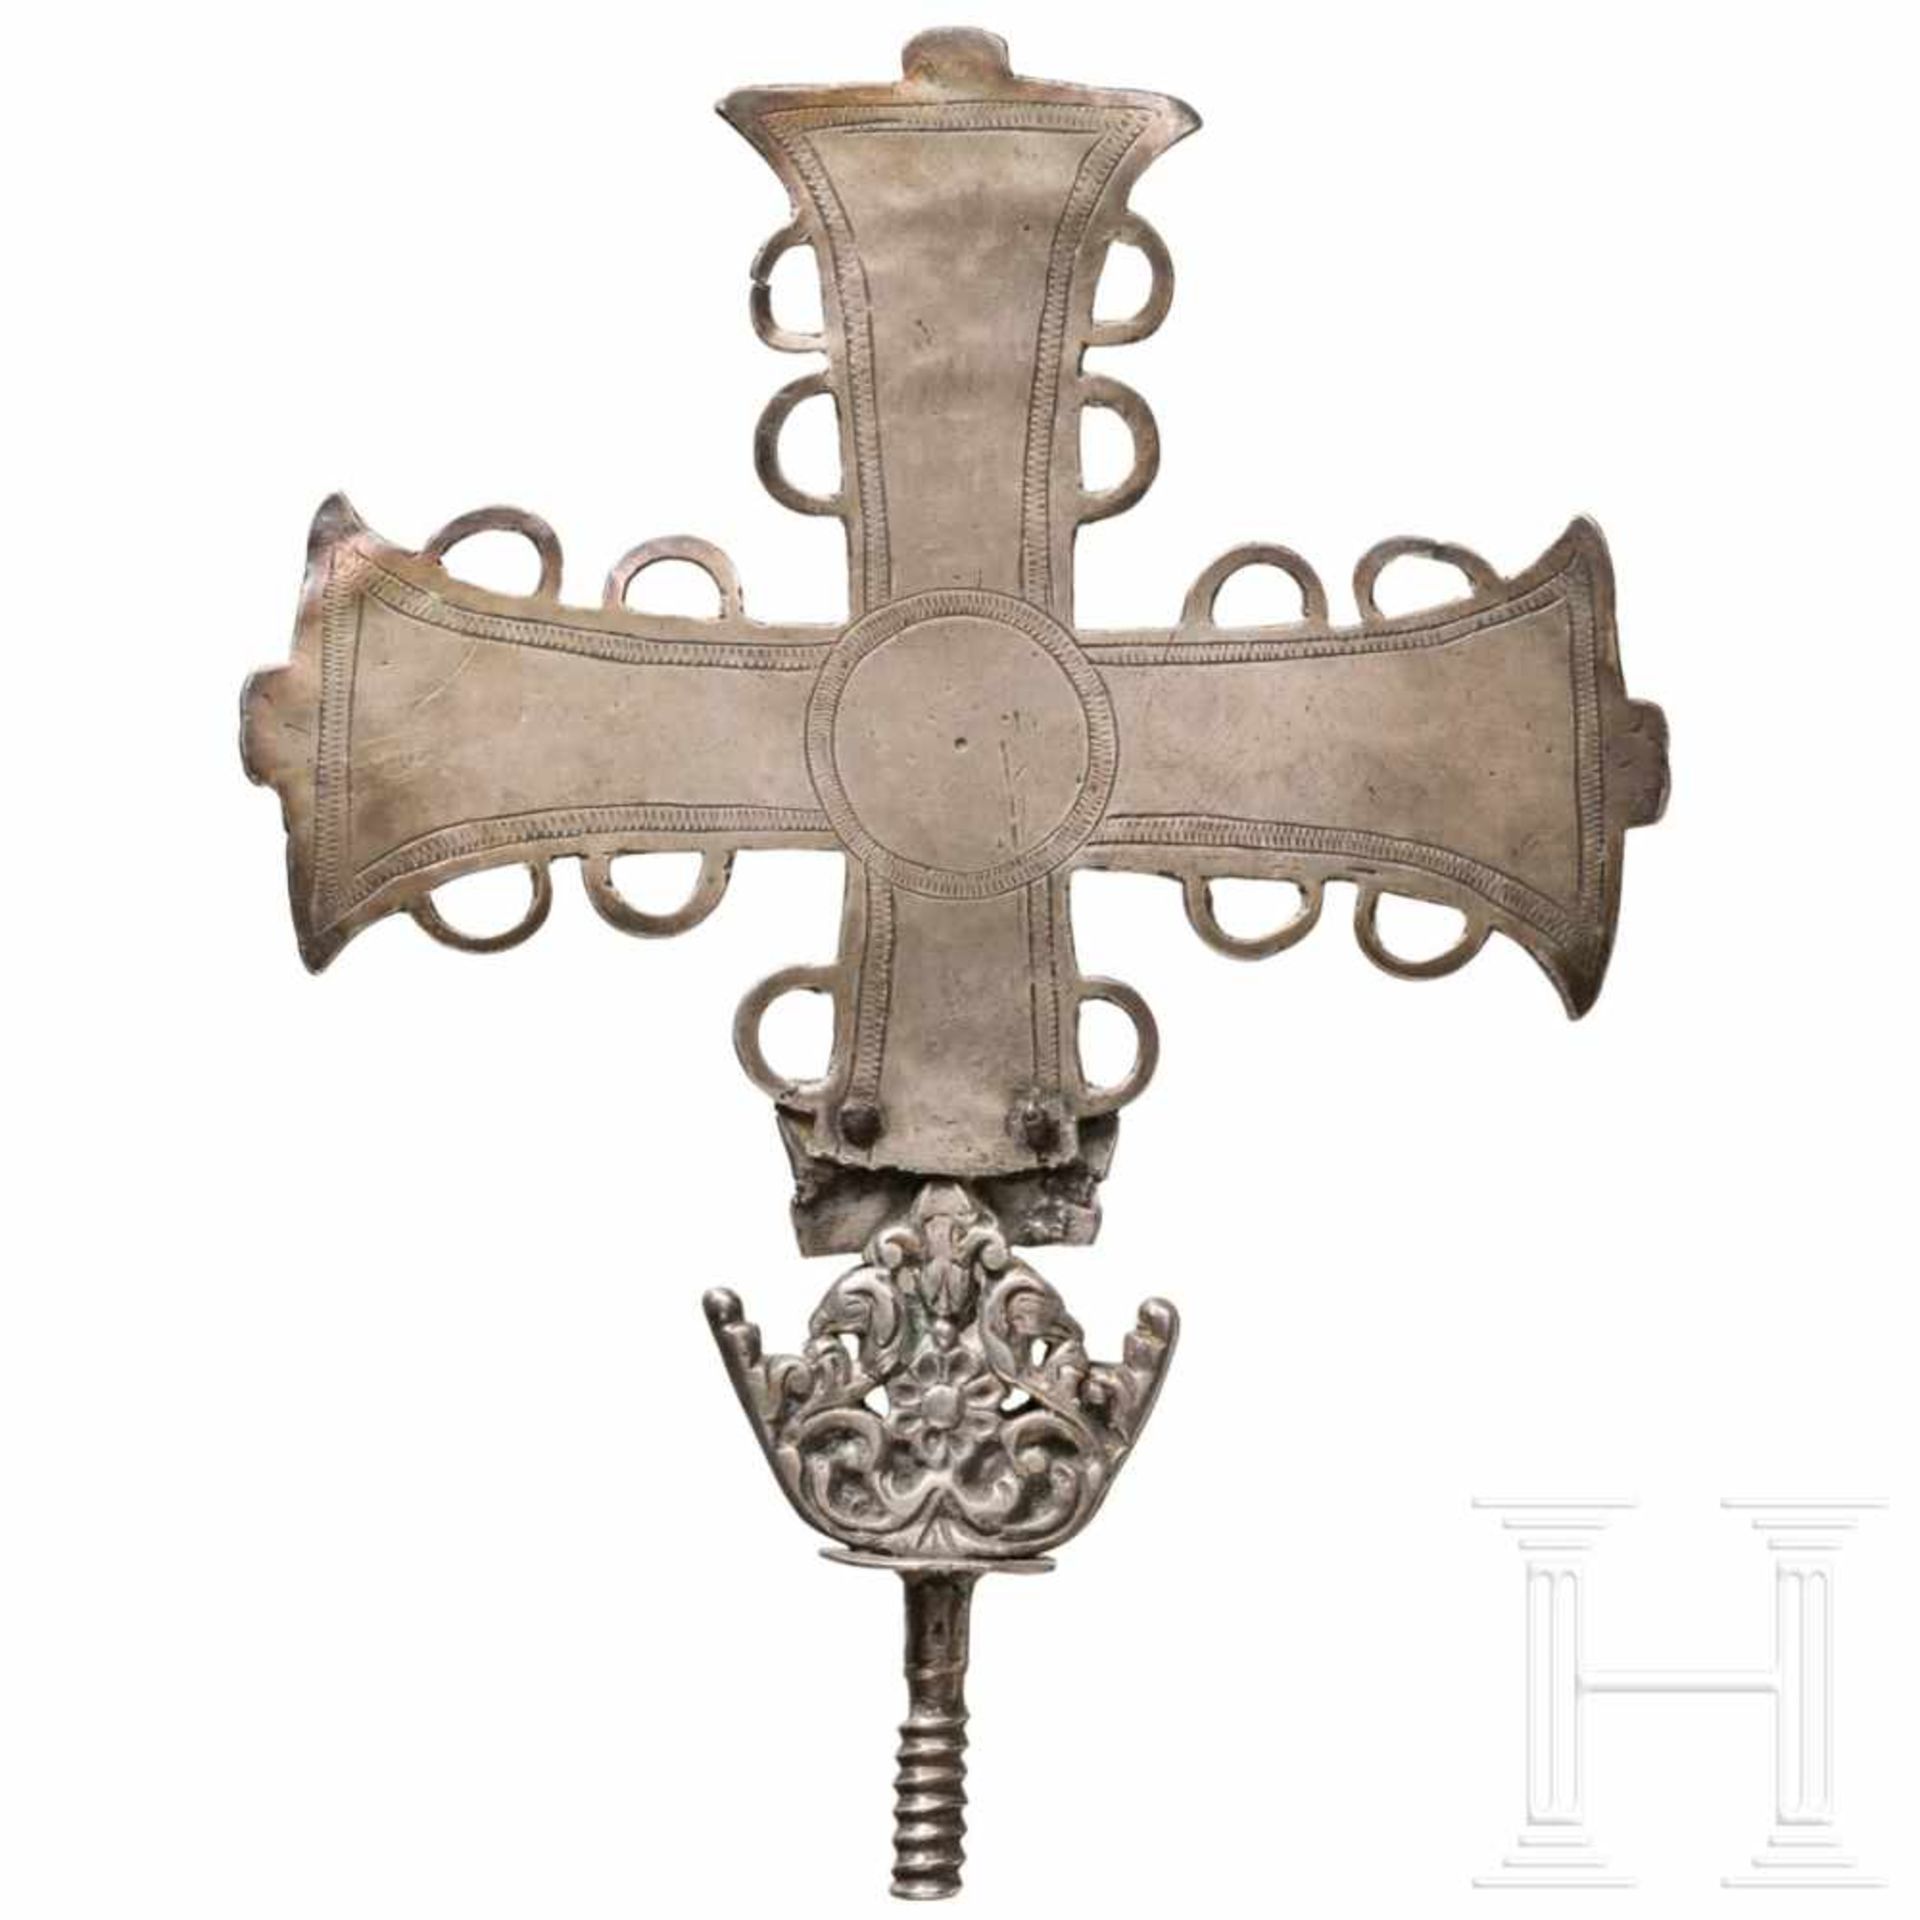 An Iberian silver bearing cross, 16th/17th centuryEventuell früheres Kreuz mit geflecheltem Dekor